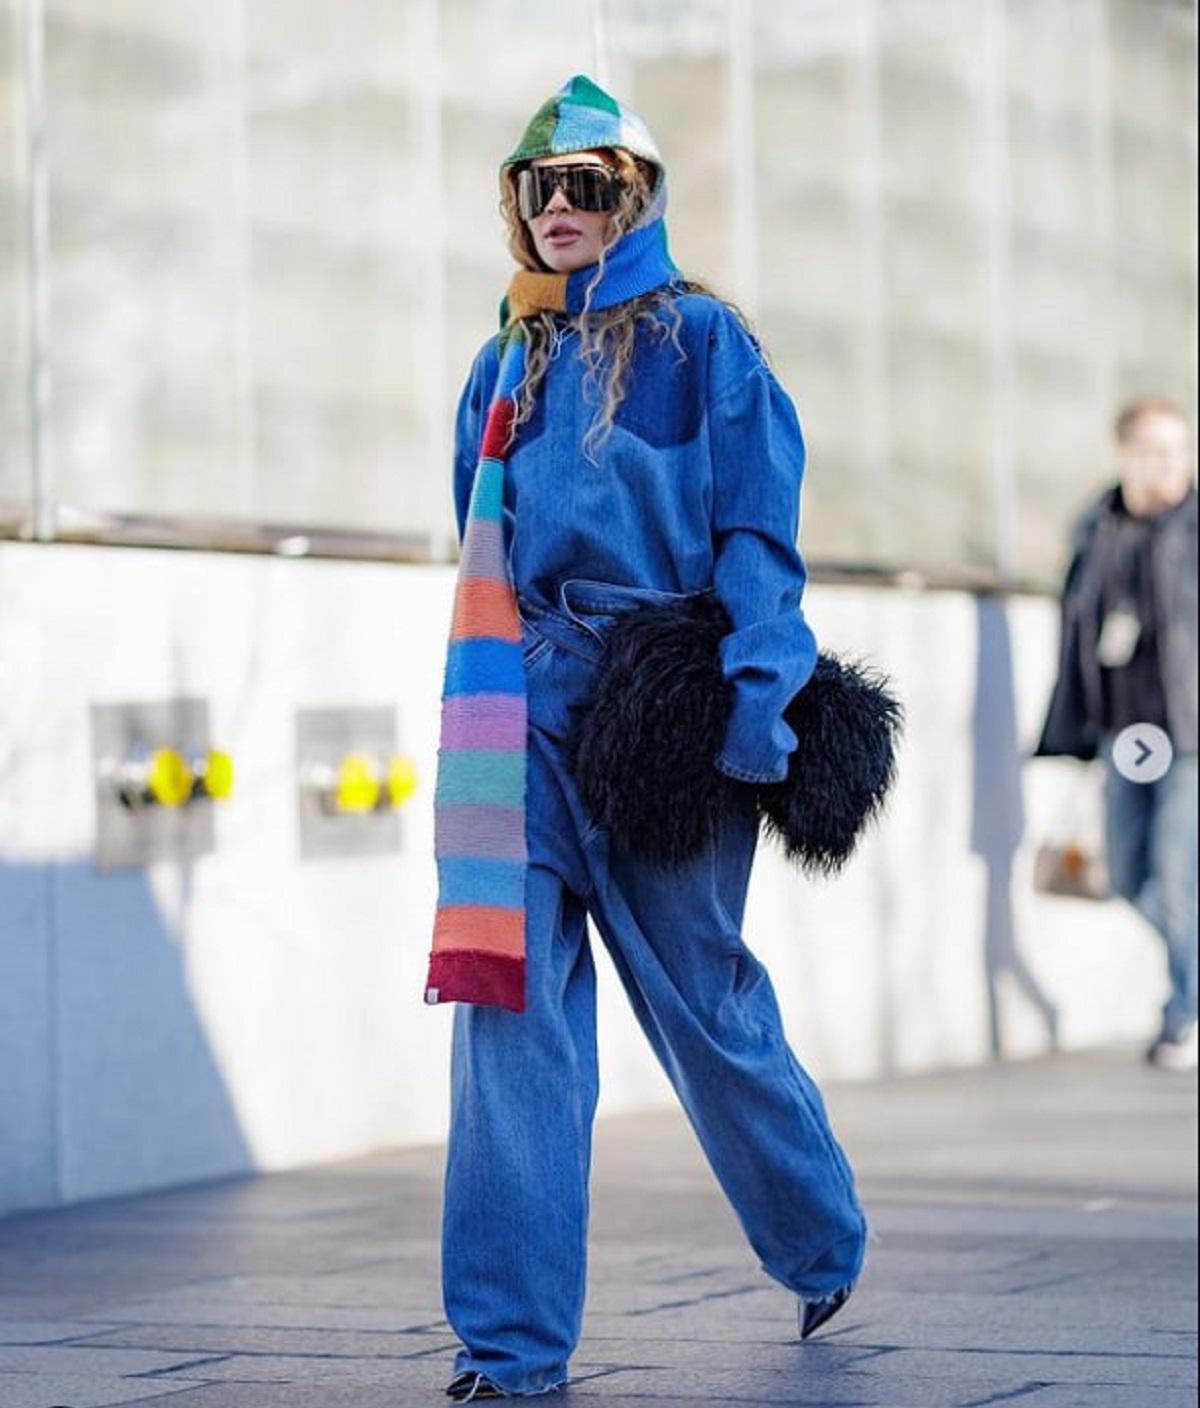 Ріта Ора прогулялася Нью-Йорком у вбранні від українського дизайнера / фото instagram Ріти Ори